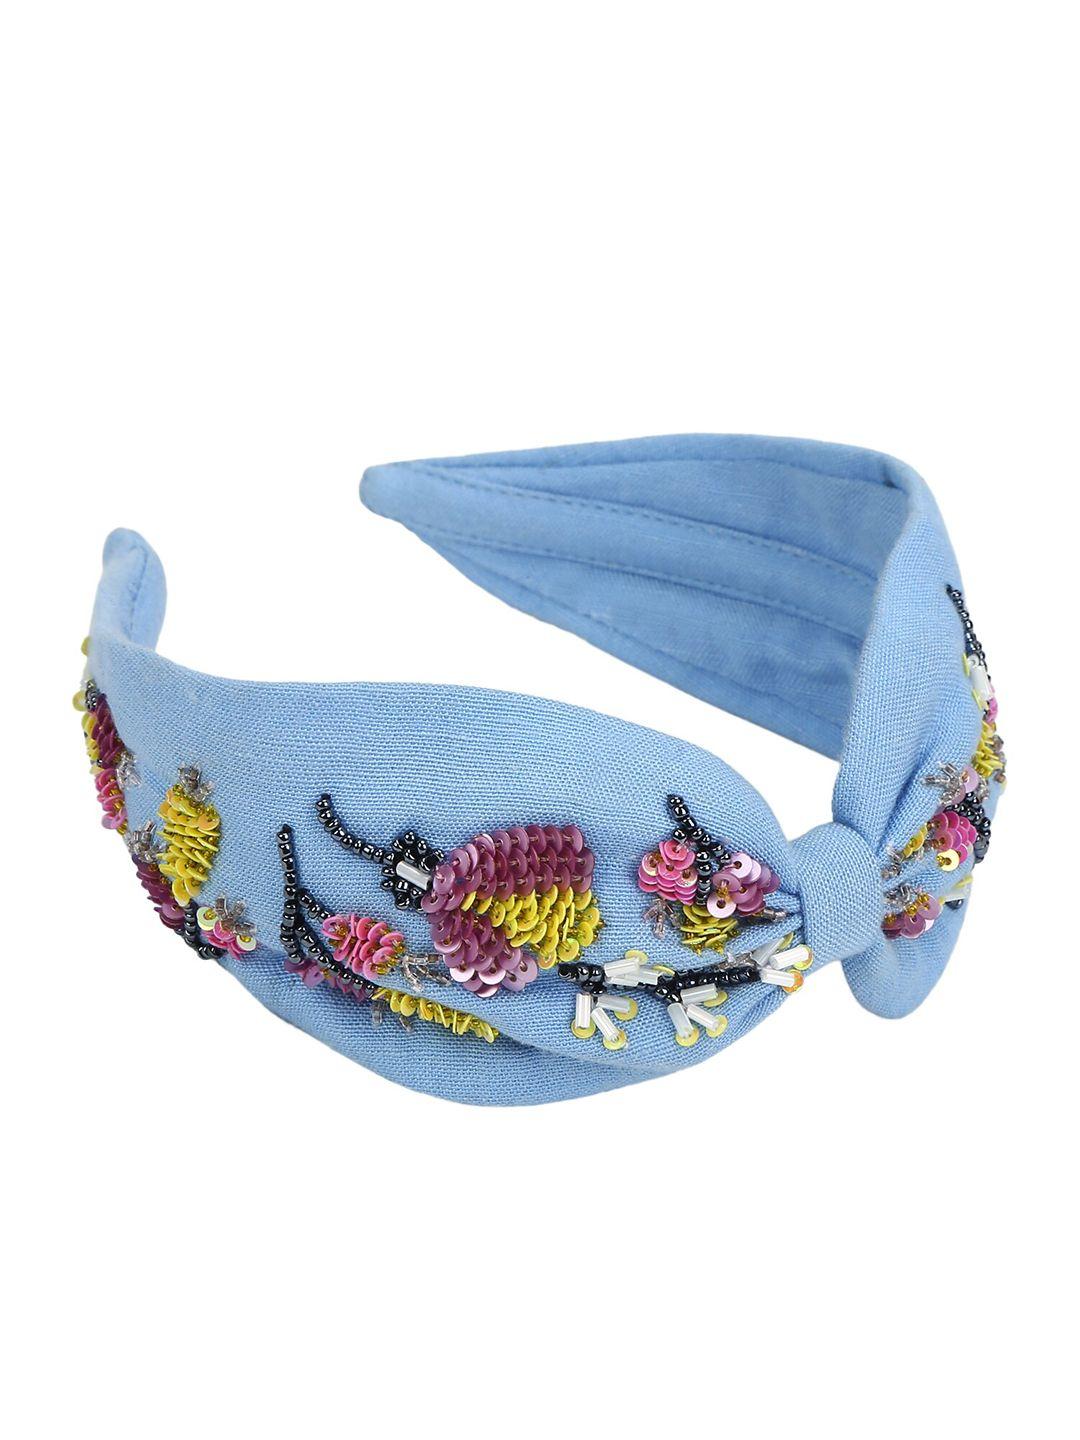 deebaco girls blue embellished bow shaped hairband